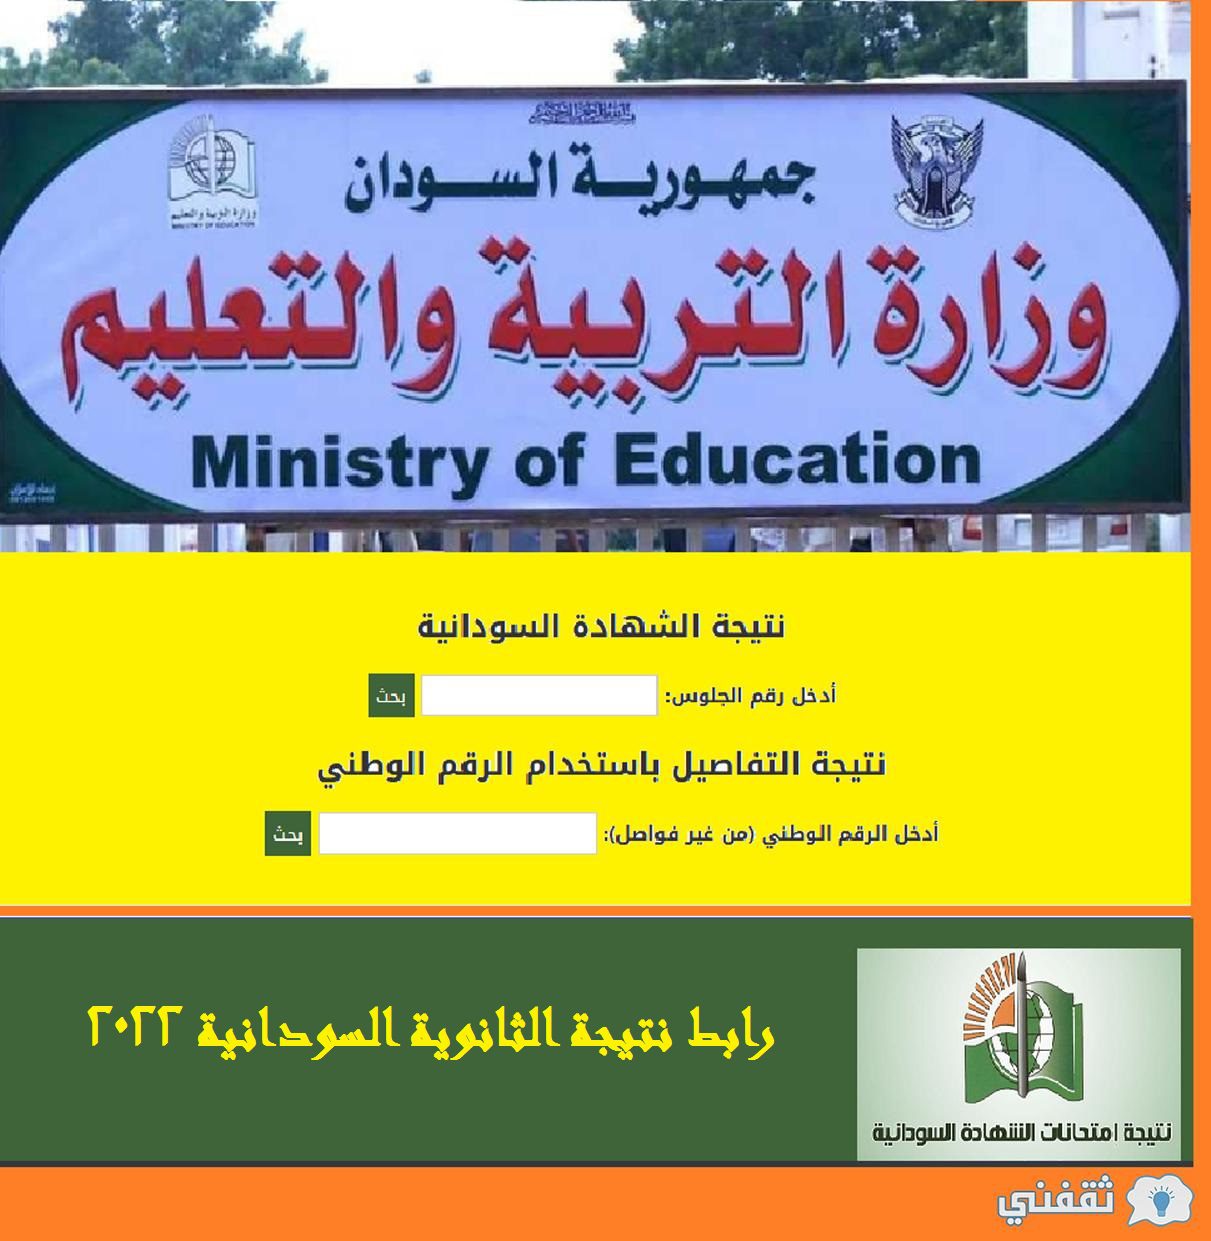 نتيجة الثانوية السودانية 2022 - رابط نتيجة الثانوية السودانية 2022 موعد إعلان نتائج الشهادة السودانية موقع وزارة التربية السودان